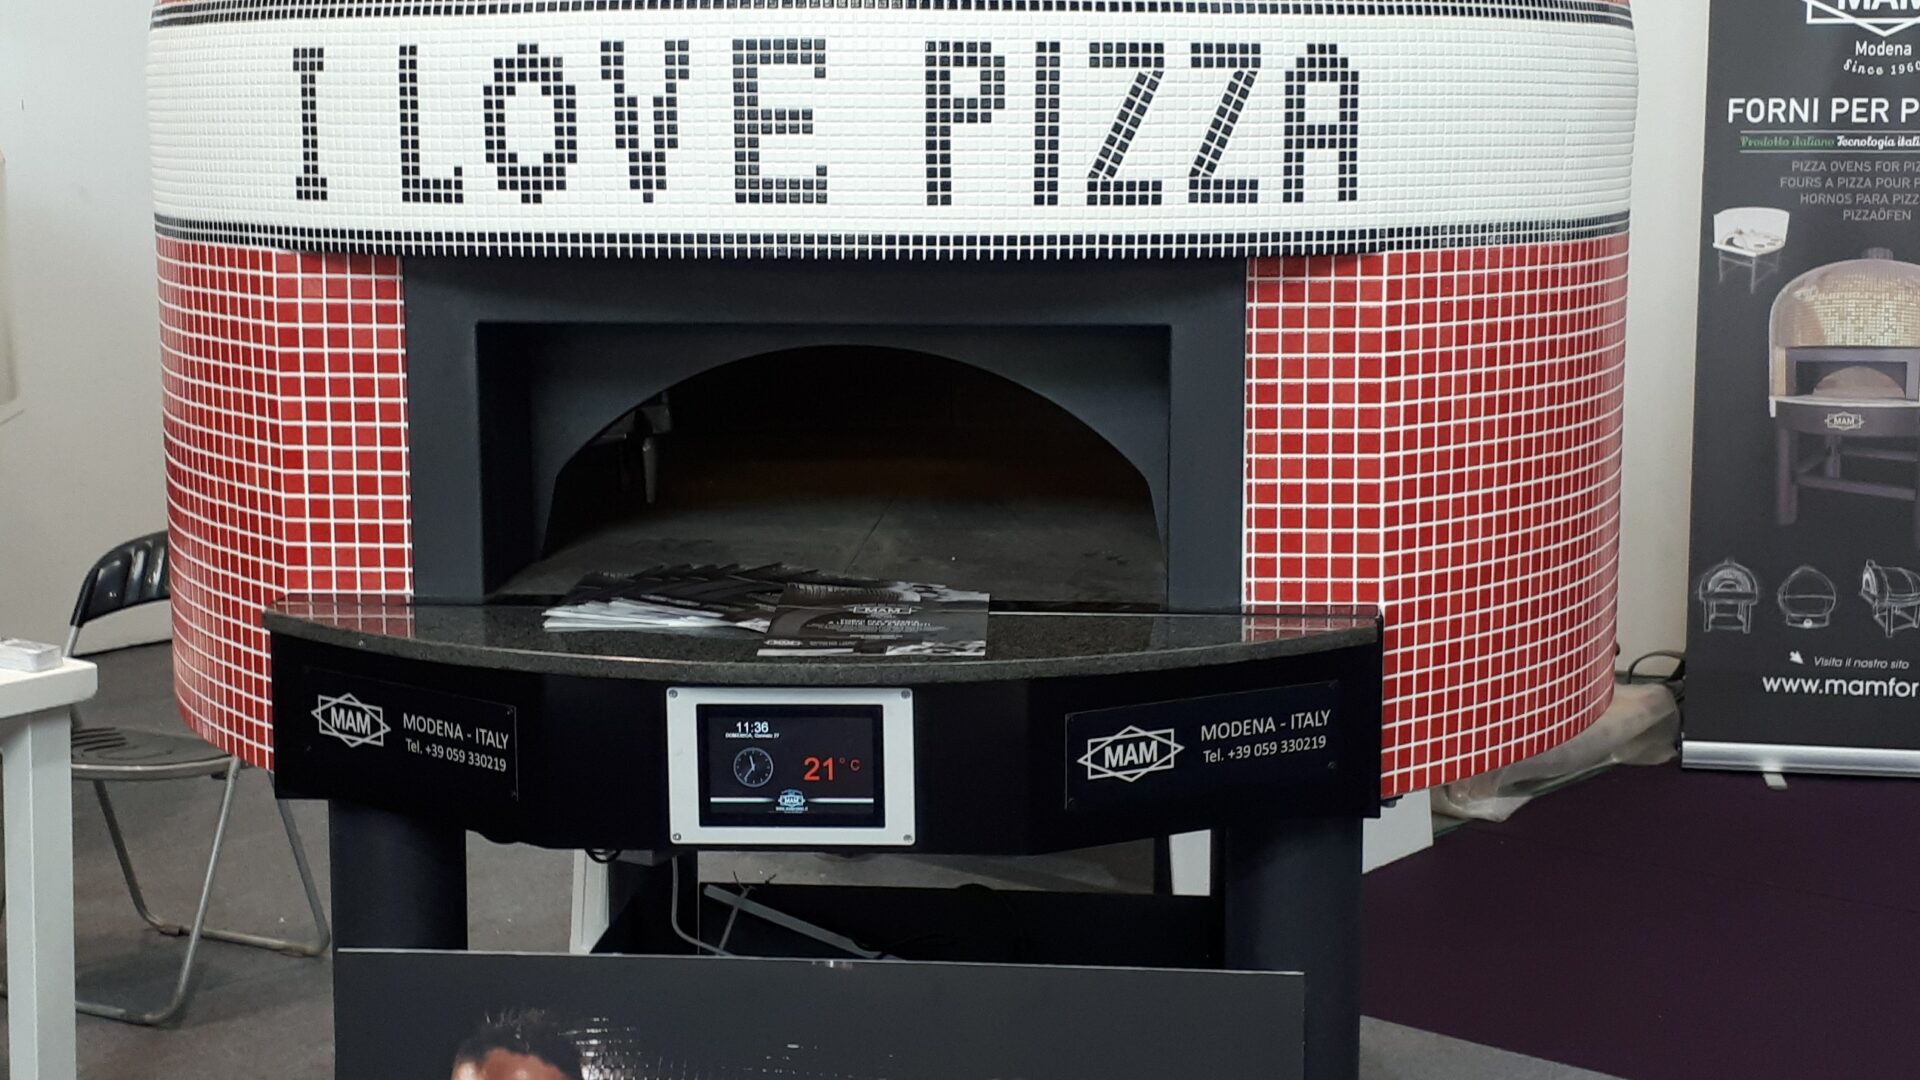 MAM FORNI – Napoli: Four à pizza statique